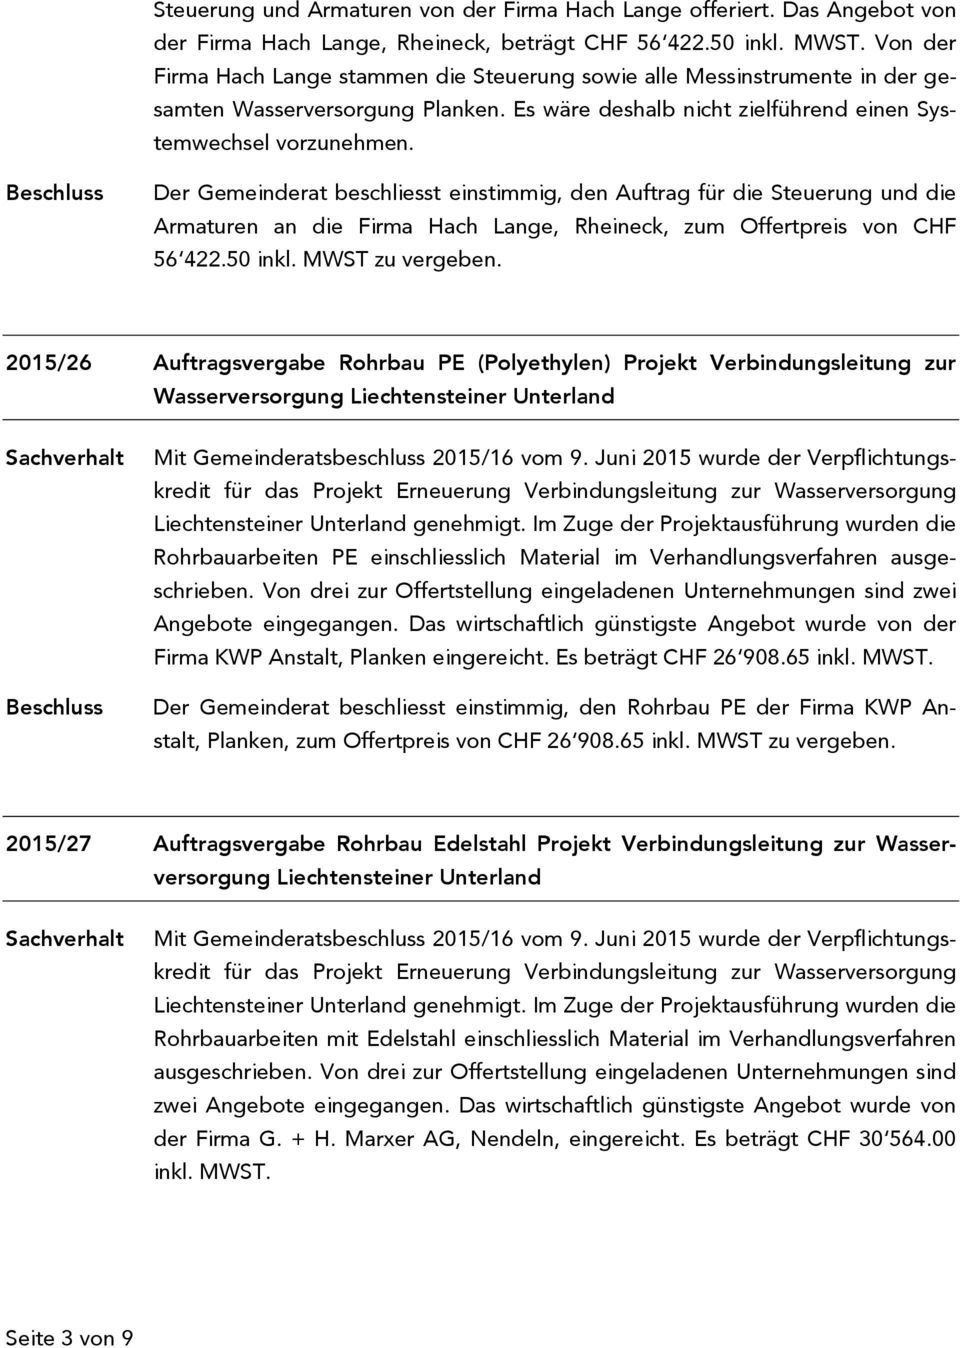 Der Gemeinderat beschliesst einstimmig, den Auftrag für die Steuerung und die Armaturen an die Firma Hach Lange, Rheineck, zum Offertpreis von CHF 56 422.50 inkl. MWST zu vergeben.